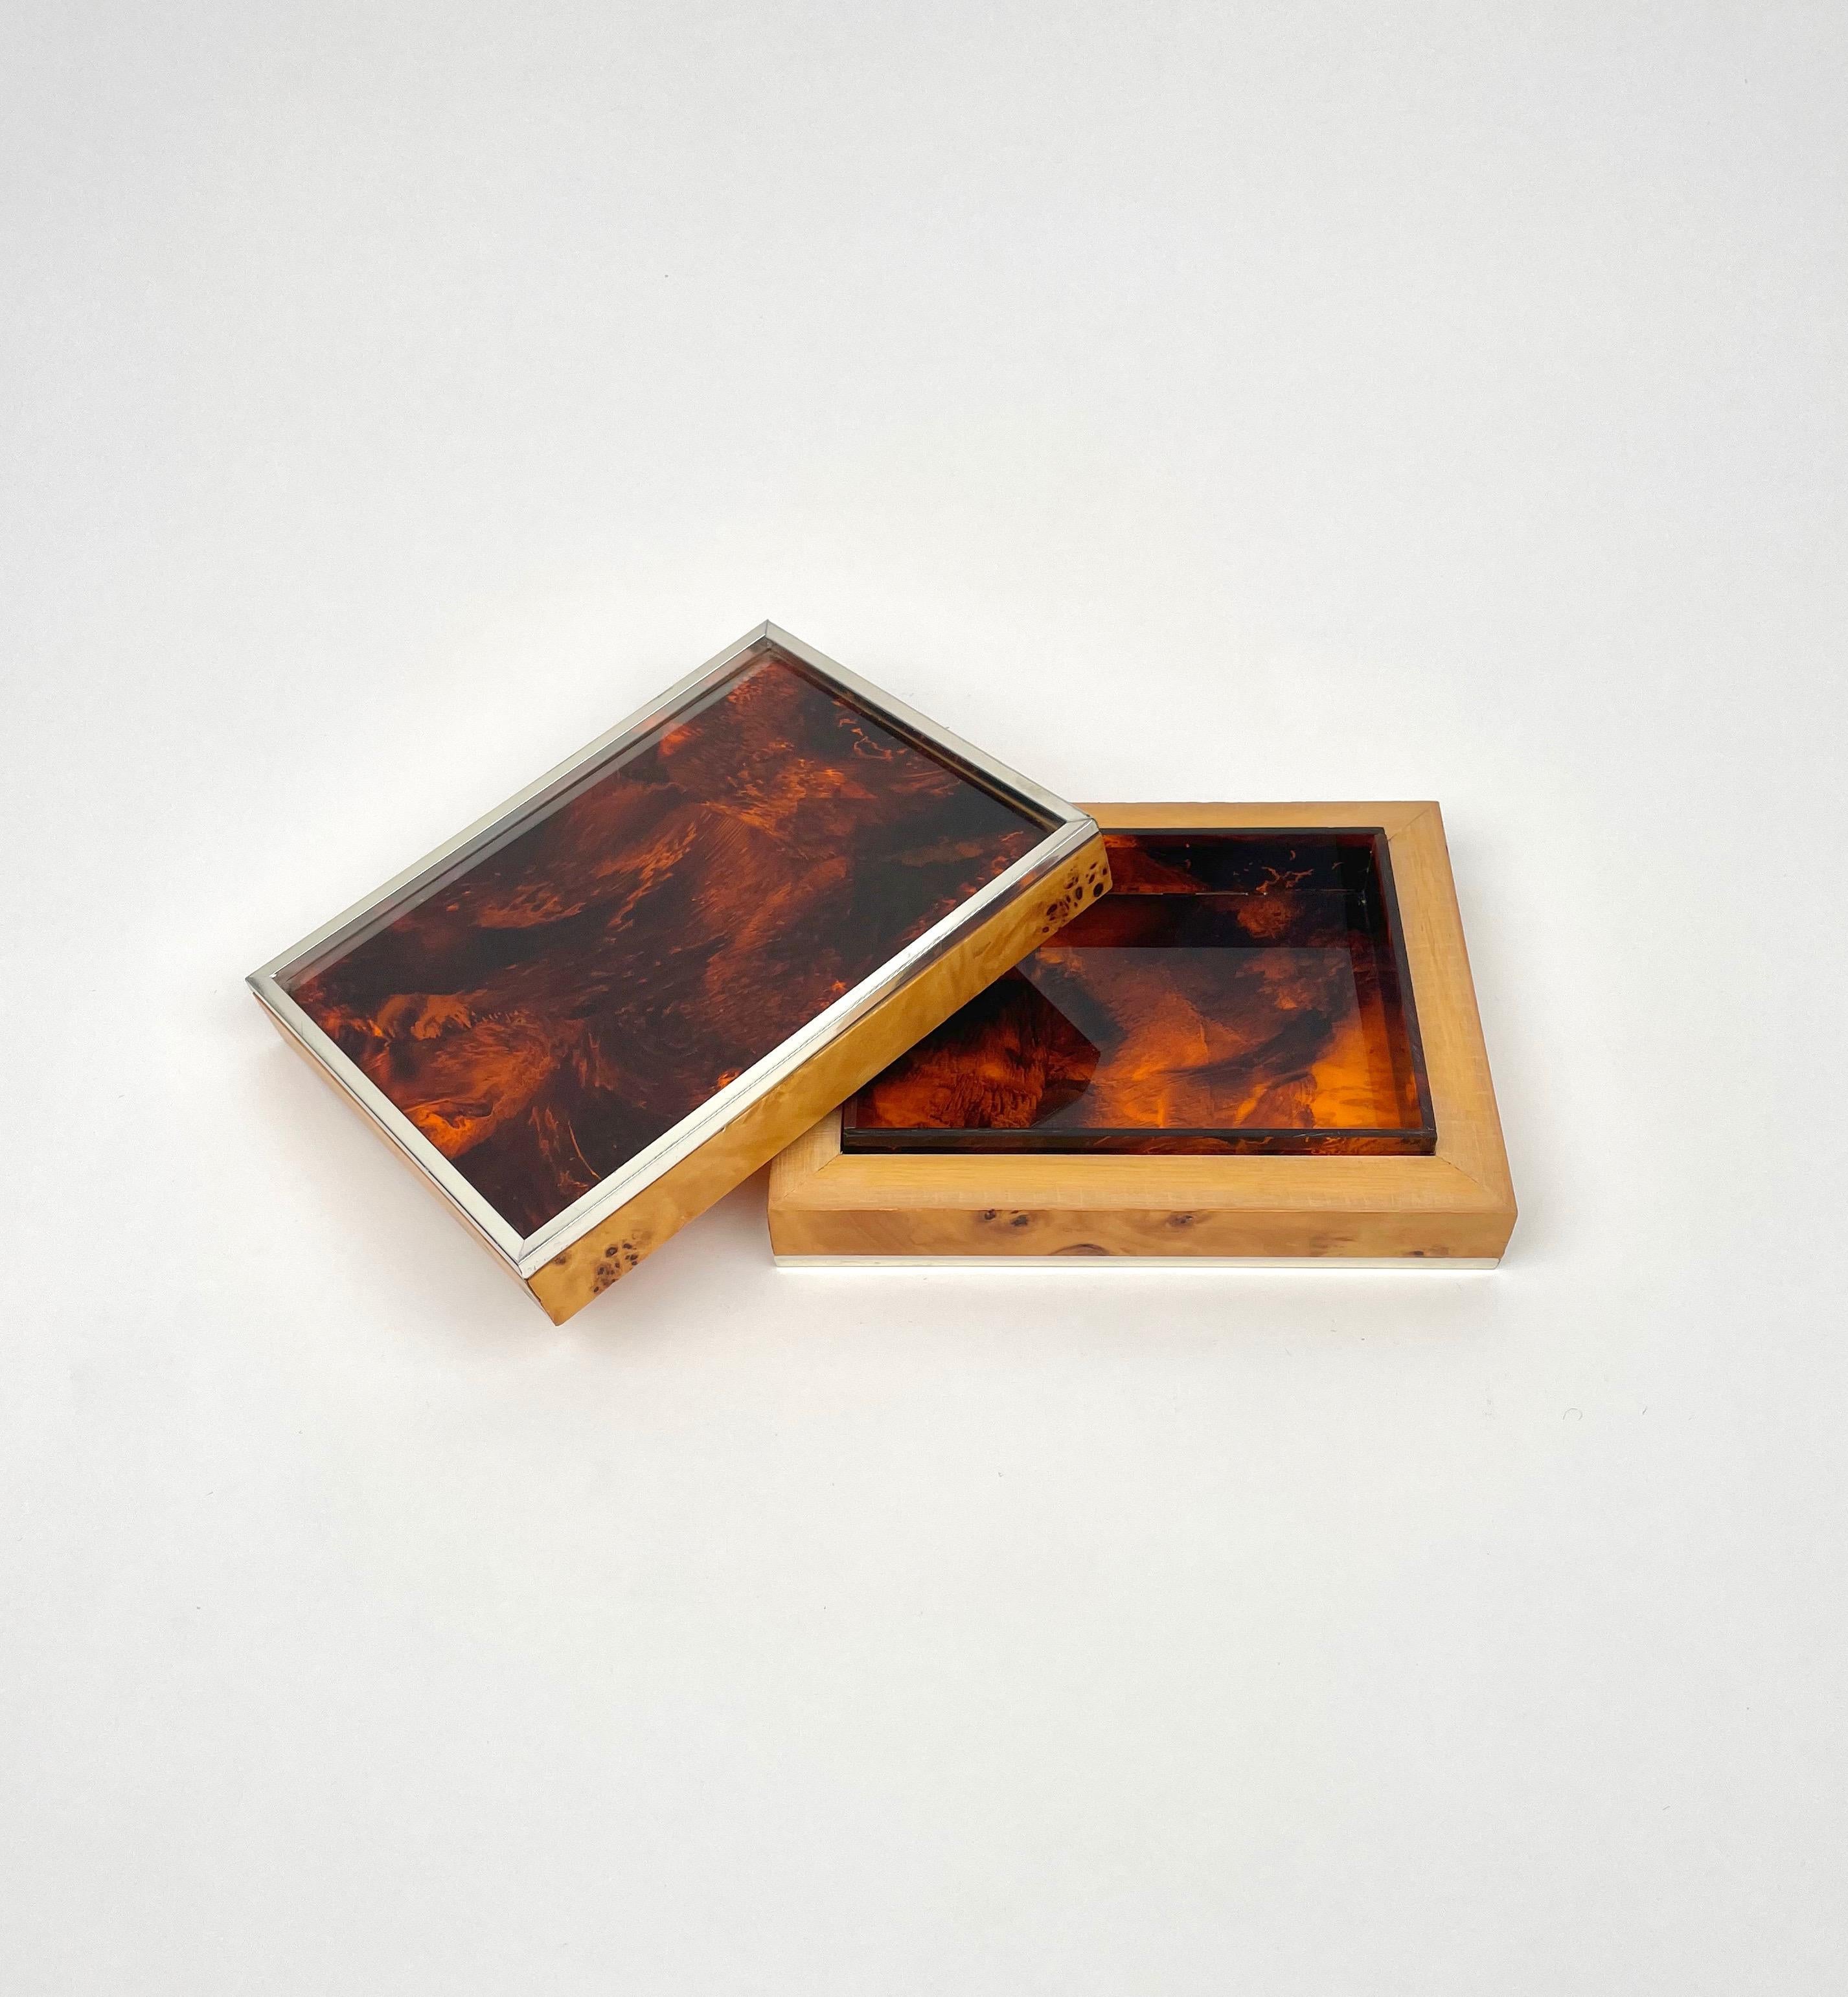 Boîte rectangulaire en lucite effet écaille et cadre en bois de ronce, fabriquée en Italie dans les années 1970.